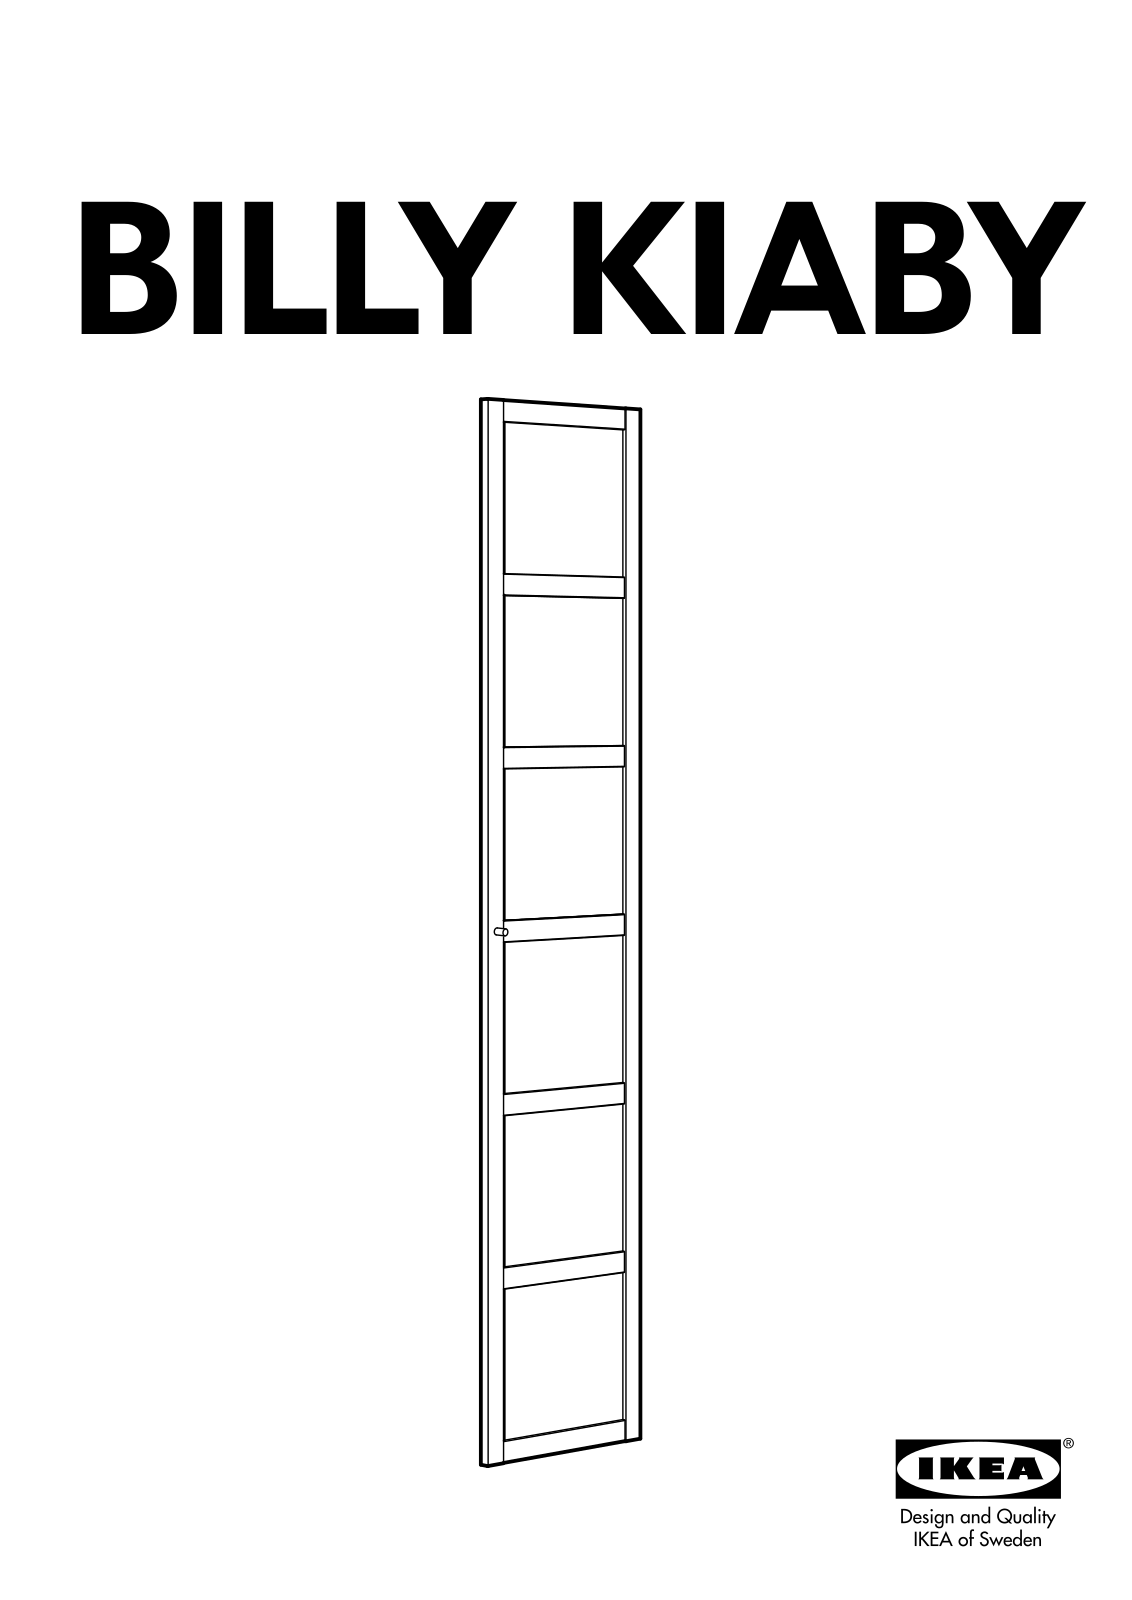 IKEA BILLY KIABY GLASS DR 15 3/4X76 User Manual